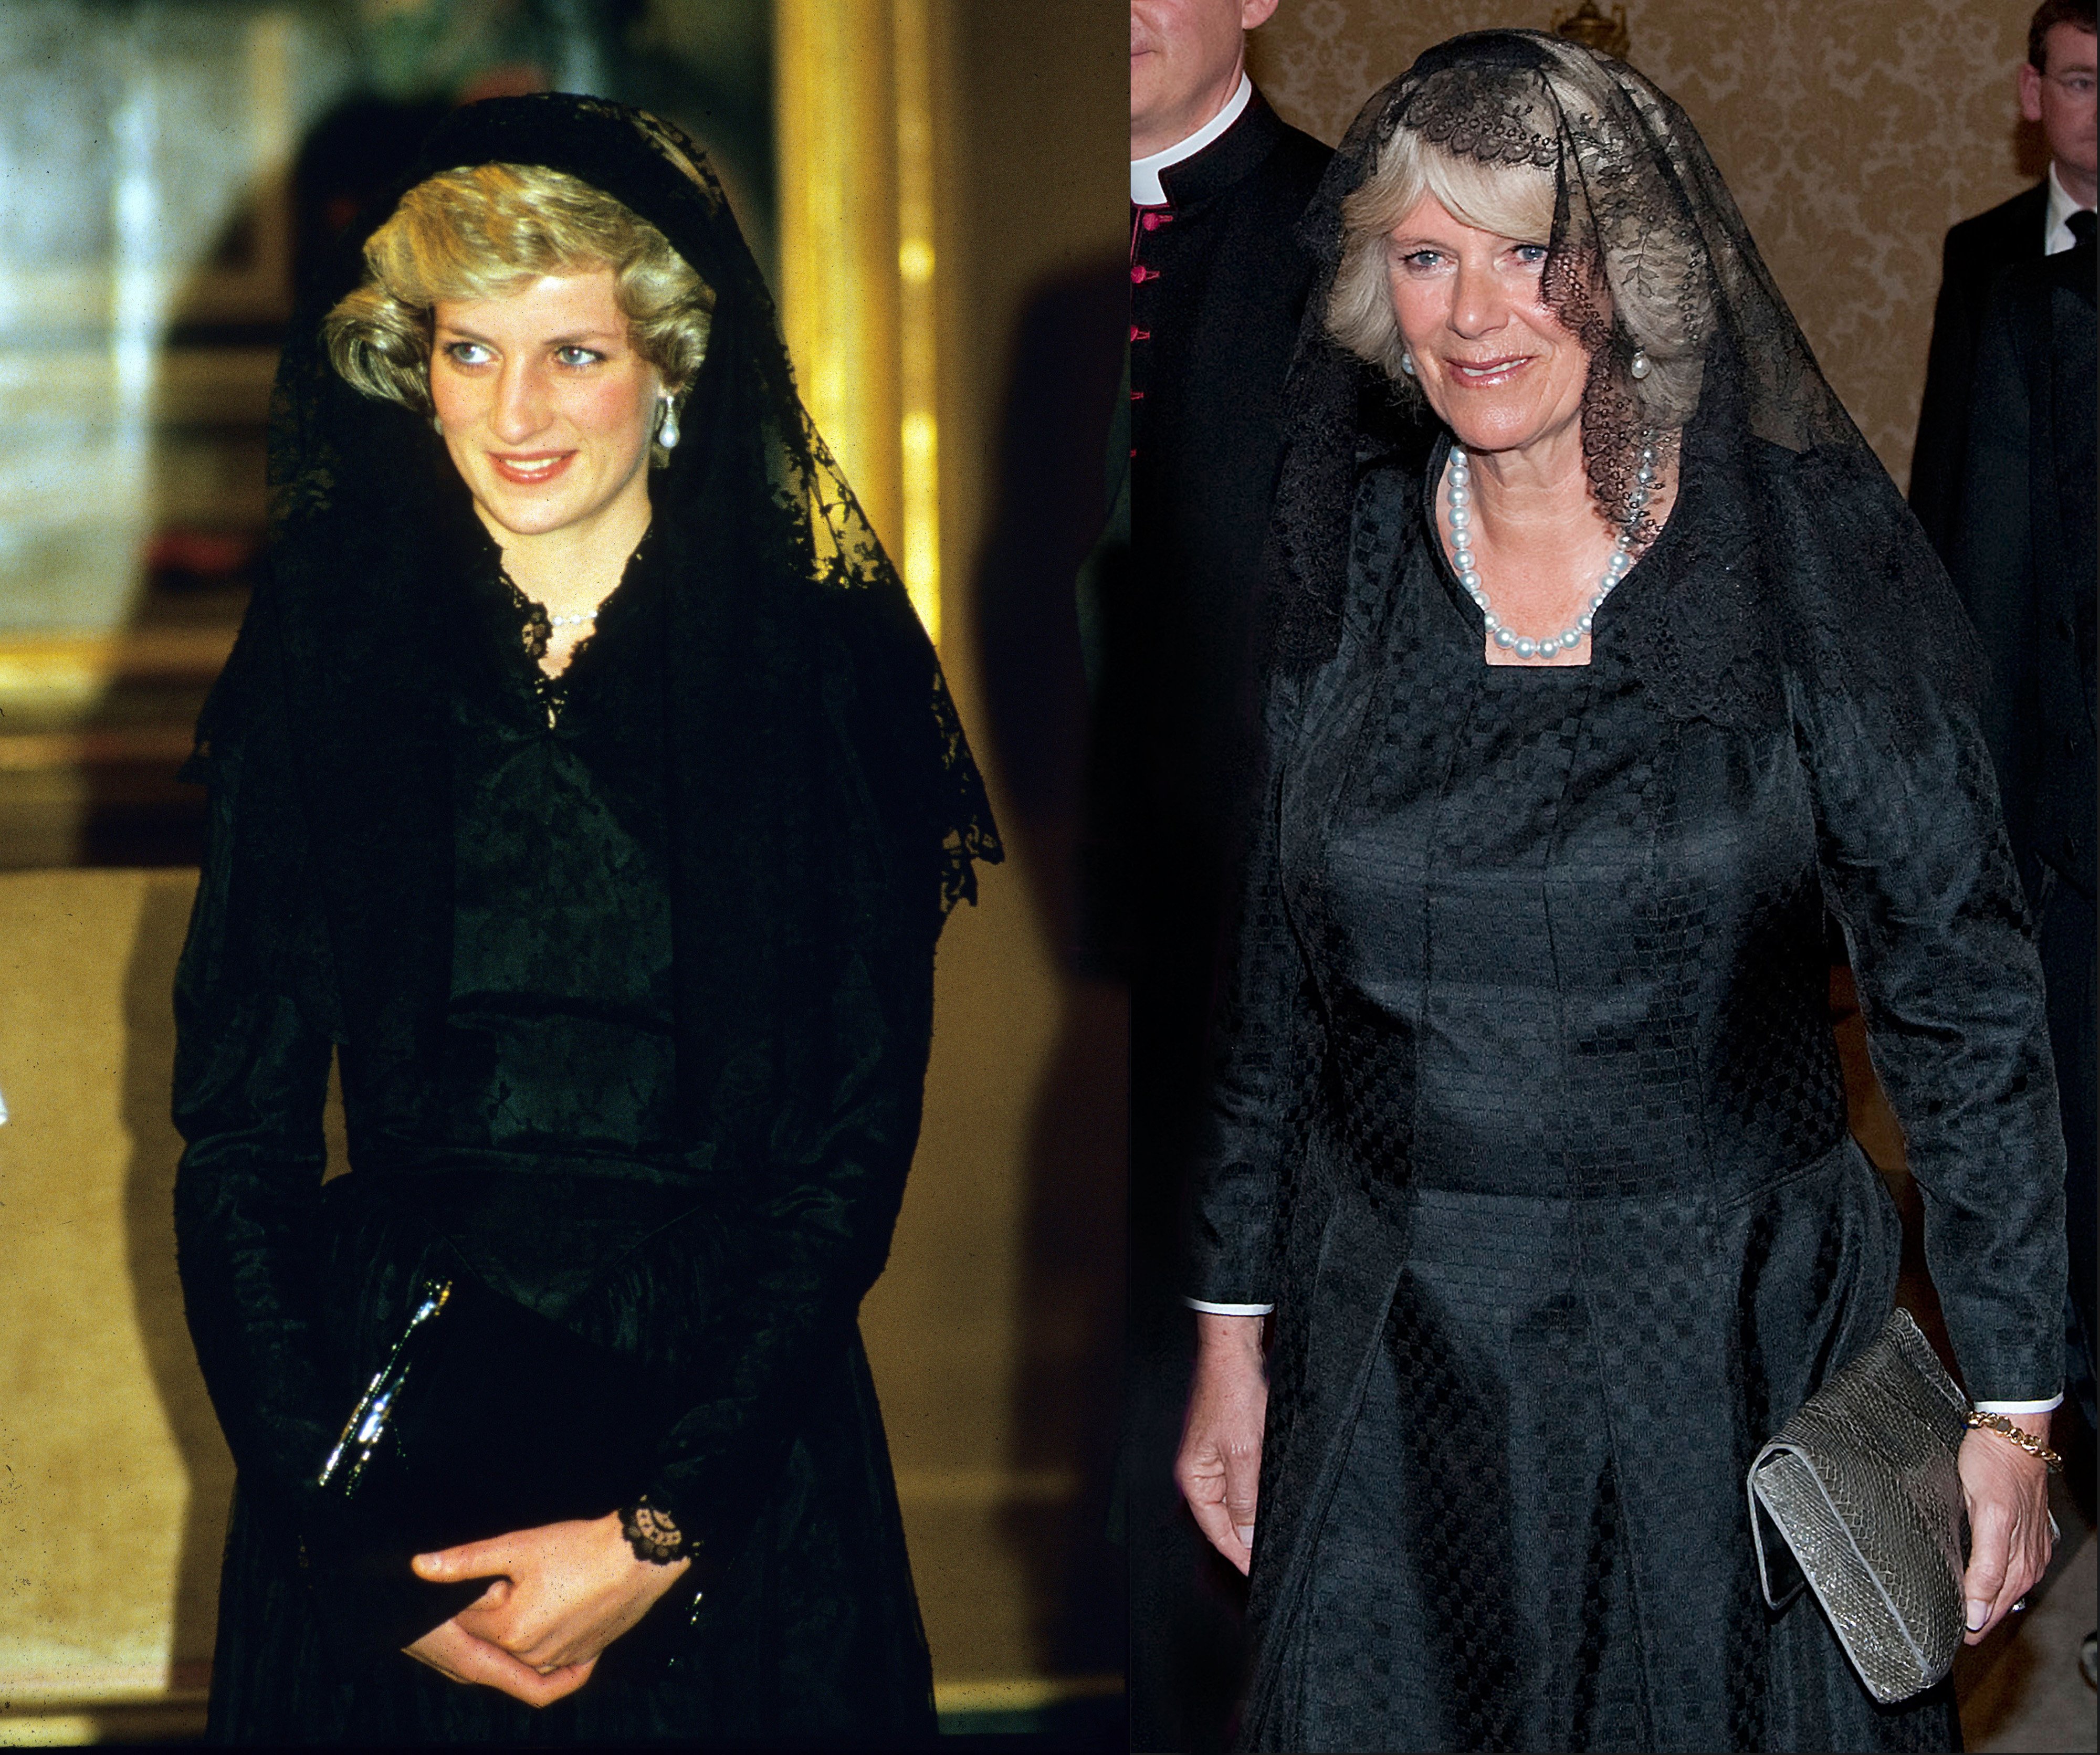 Comparaison d'images entre la princesse Diana à son arrivée au Vatican en avril 1985 et Camilla, duchesse de Cornouailles rencontrant le pape Benoît XVI à la basilique Saint-Pierre le 27 avril 2009 dans la Cité du Vatican, le Vatican | Source : Getty Images